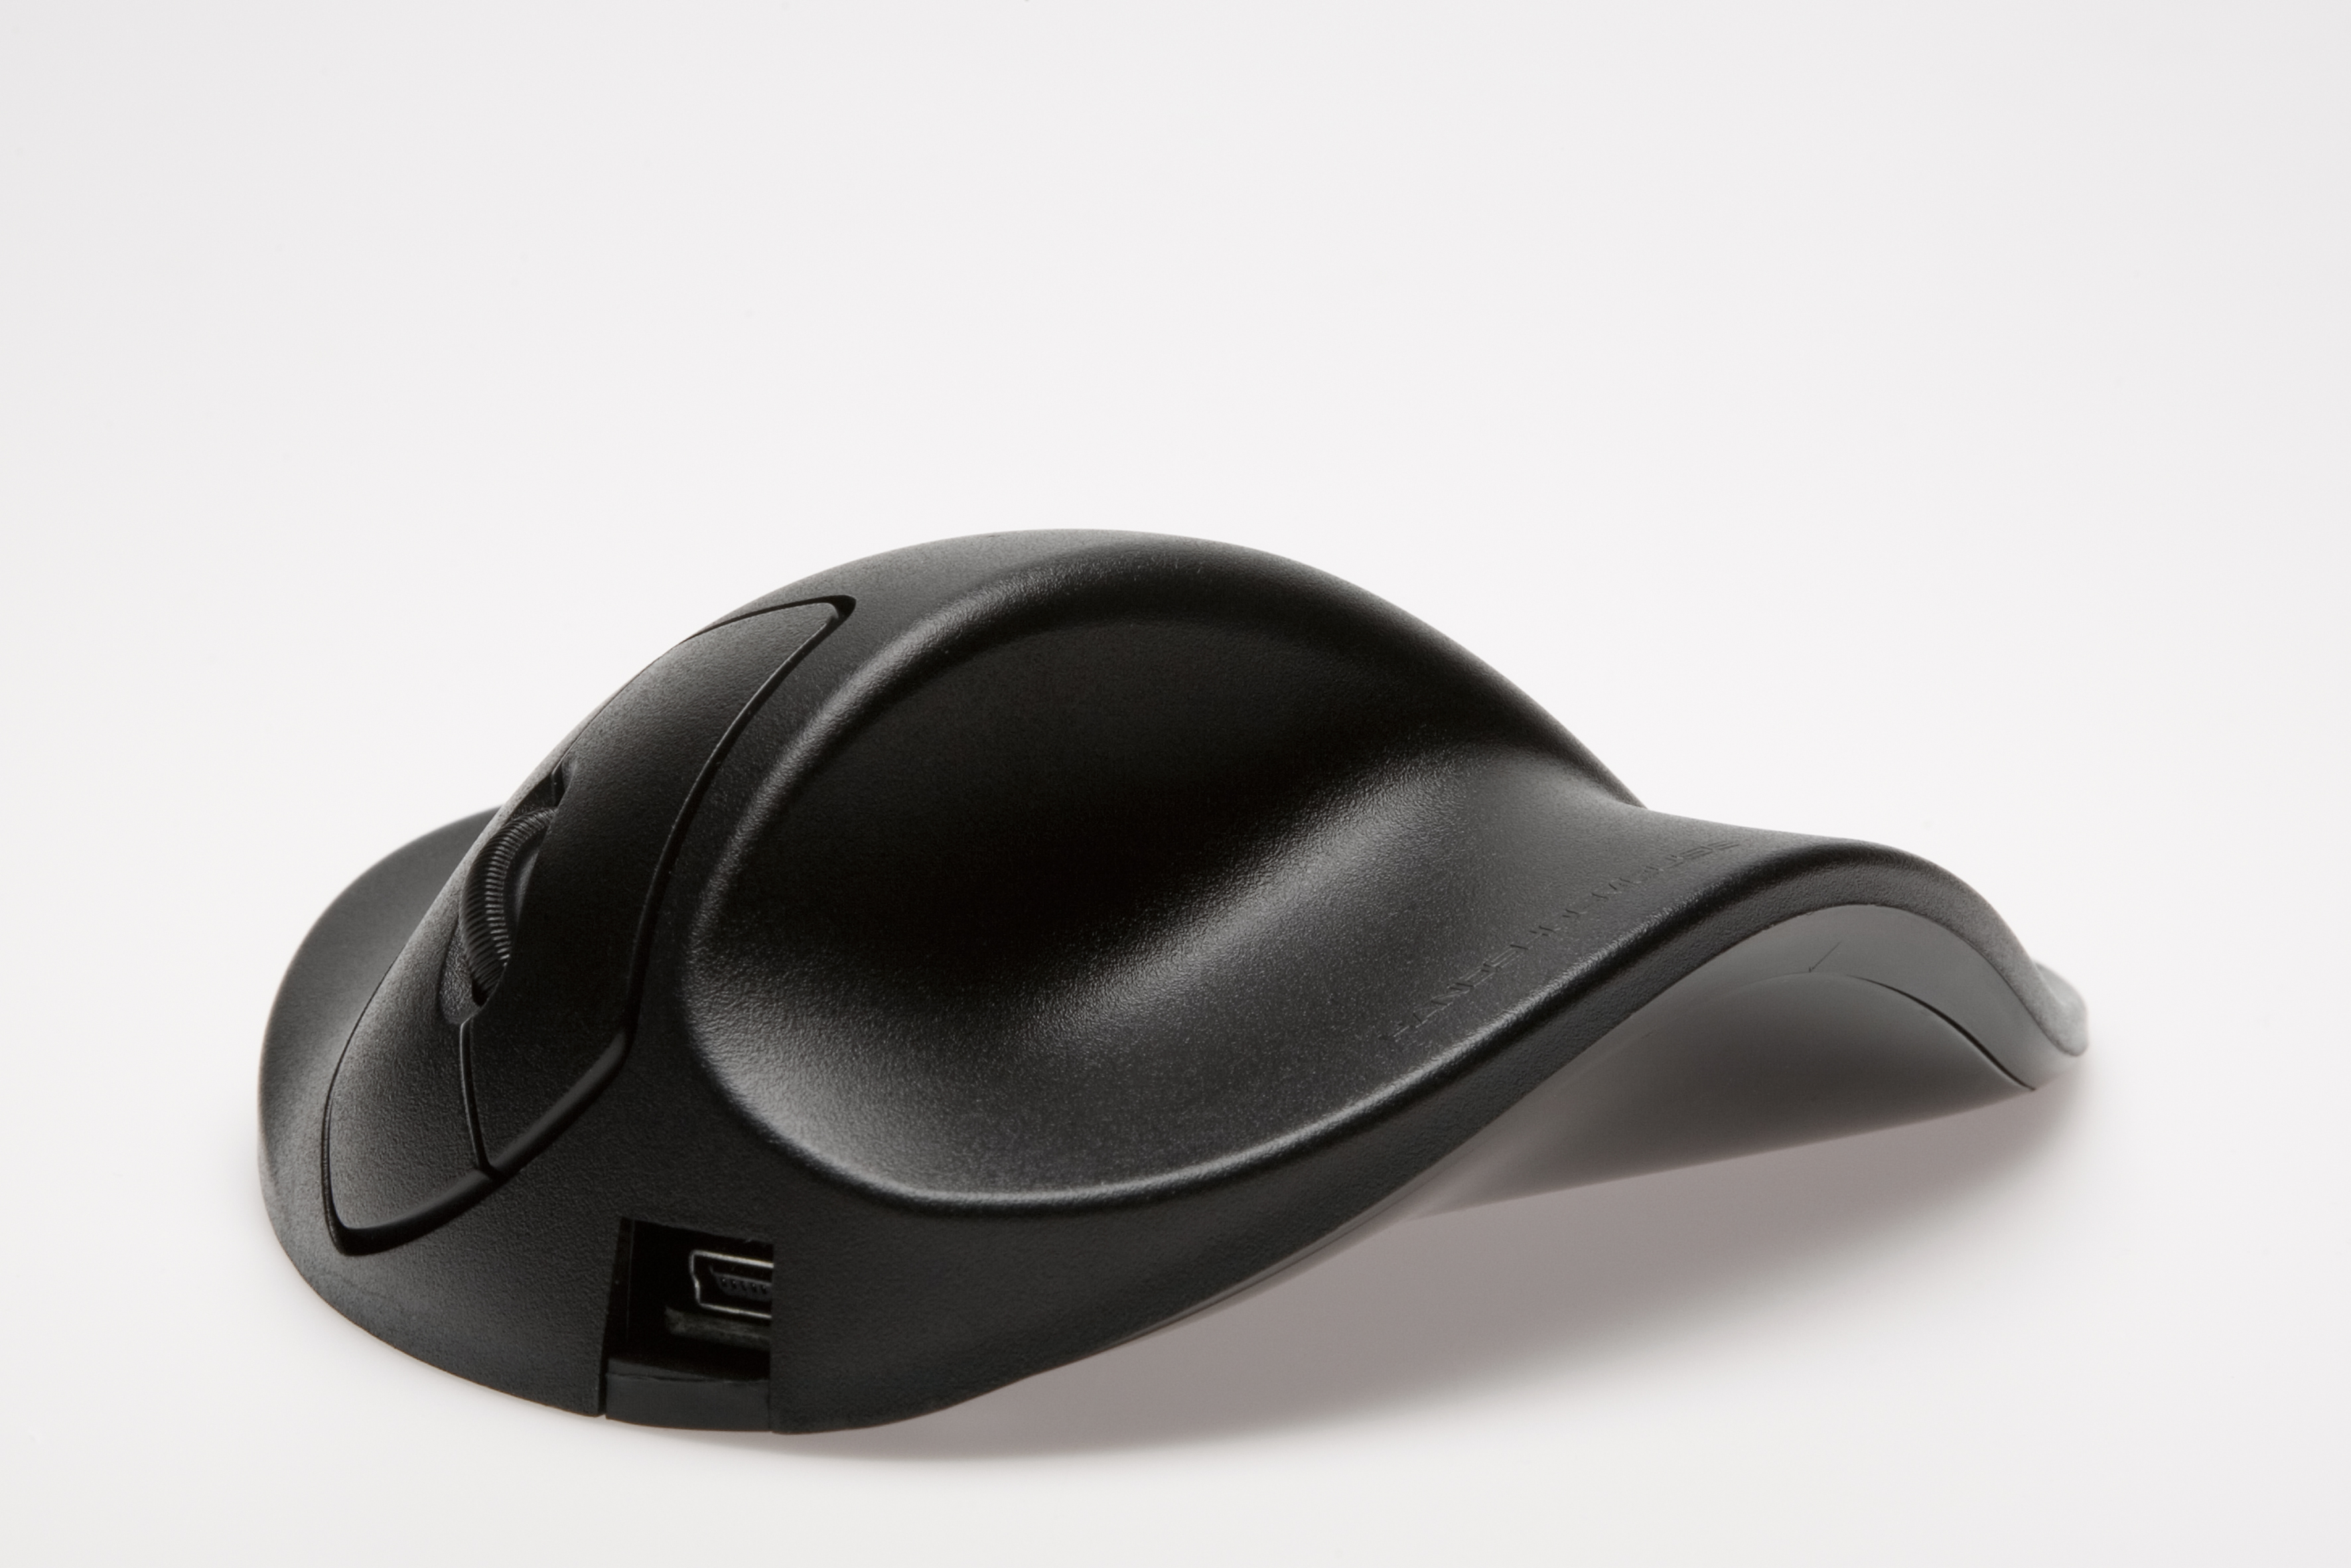 schwarz M2UB-LC ergonomische Maus, HIPPUS